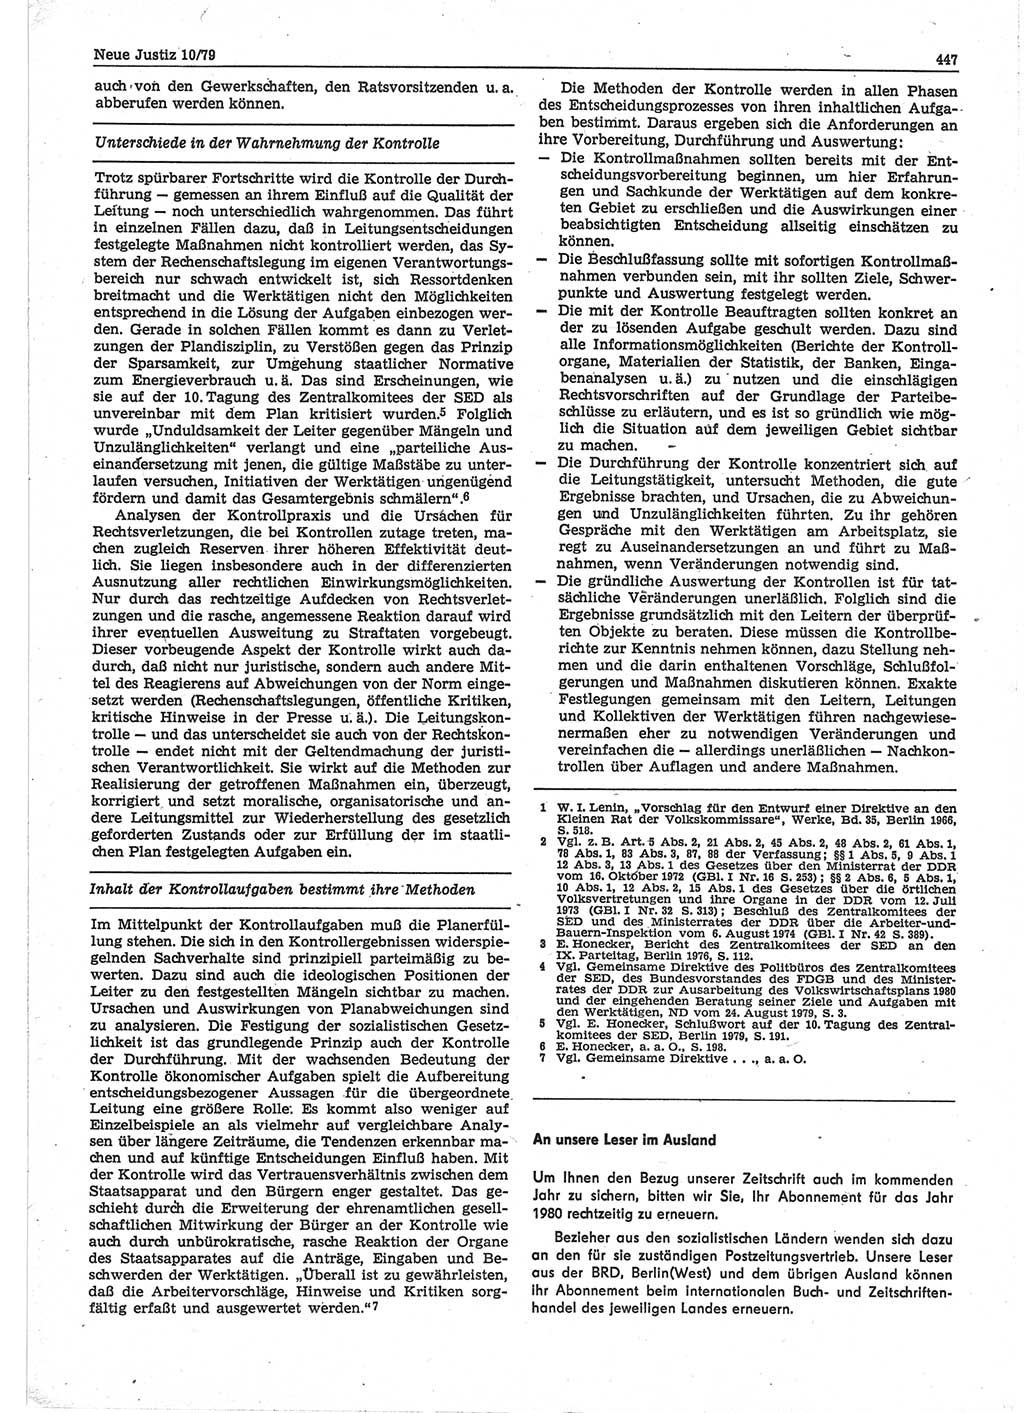 Neue Justiz (NJ), Zeitschrift für sozialistisches Recht und Gesetzlichkeit [Deutsche Demokratische Republik (DDR)], 33. Jahrgang 1979, Seite 447 (NJ DDR 1979, S. 447)